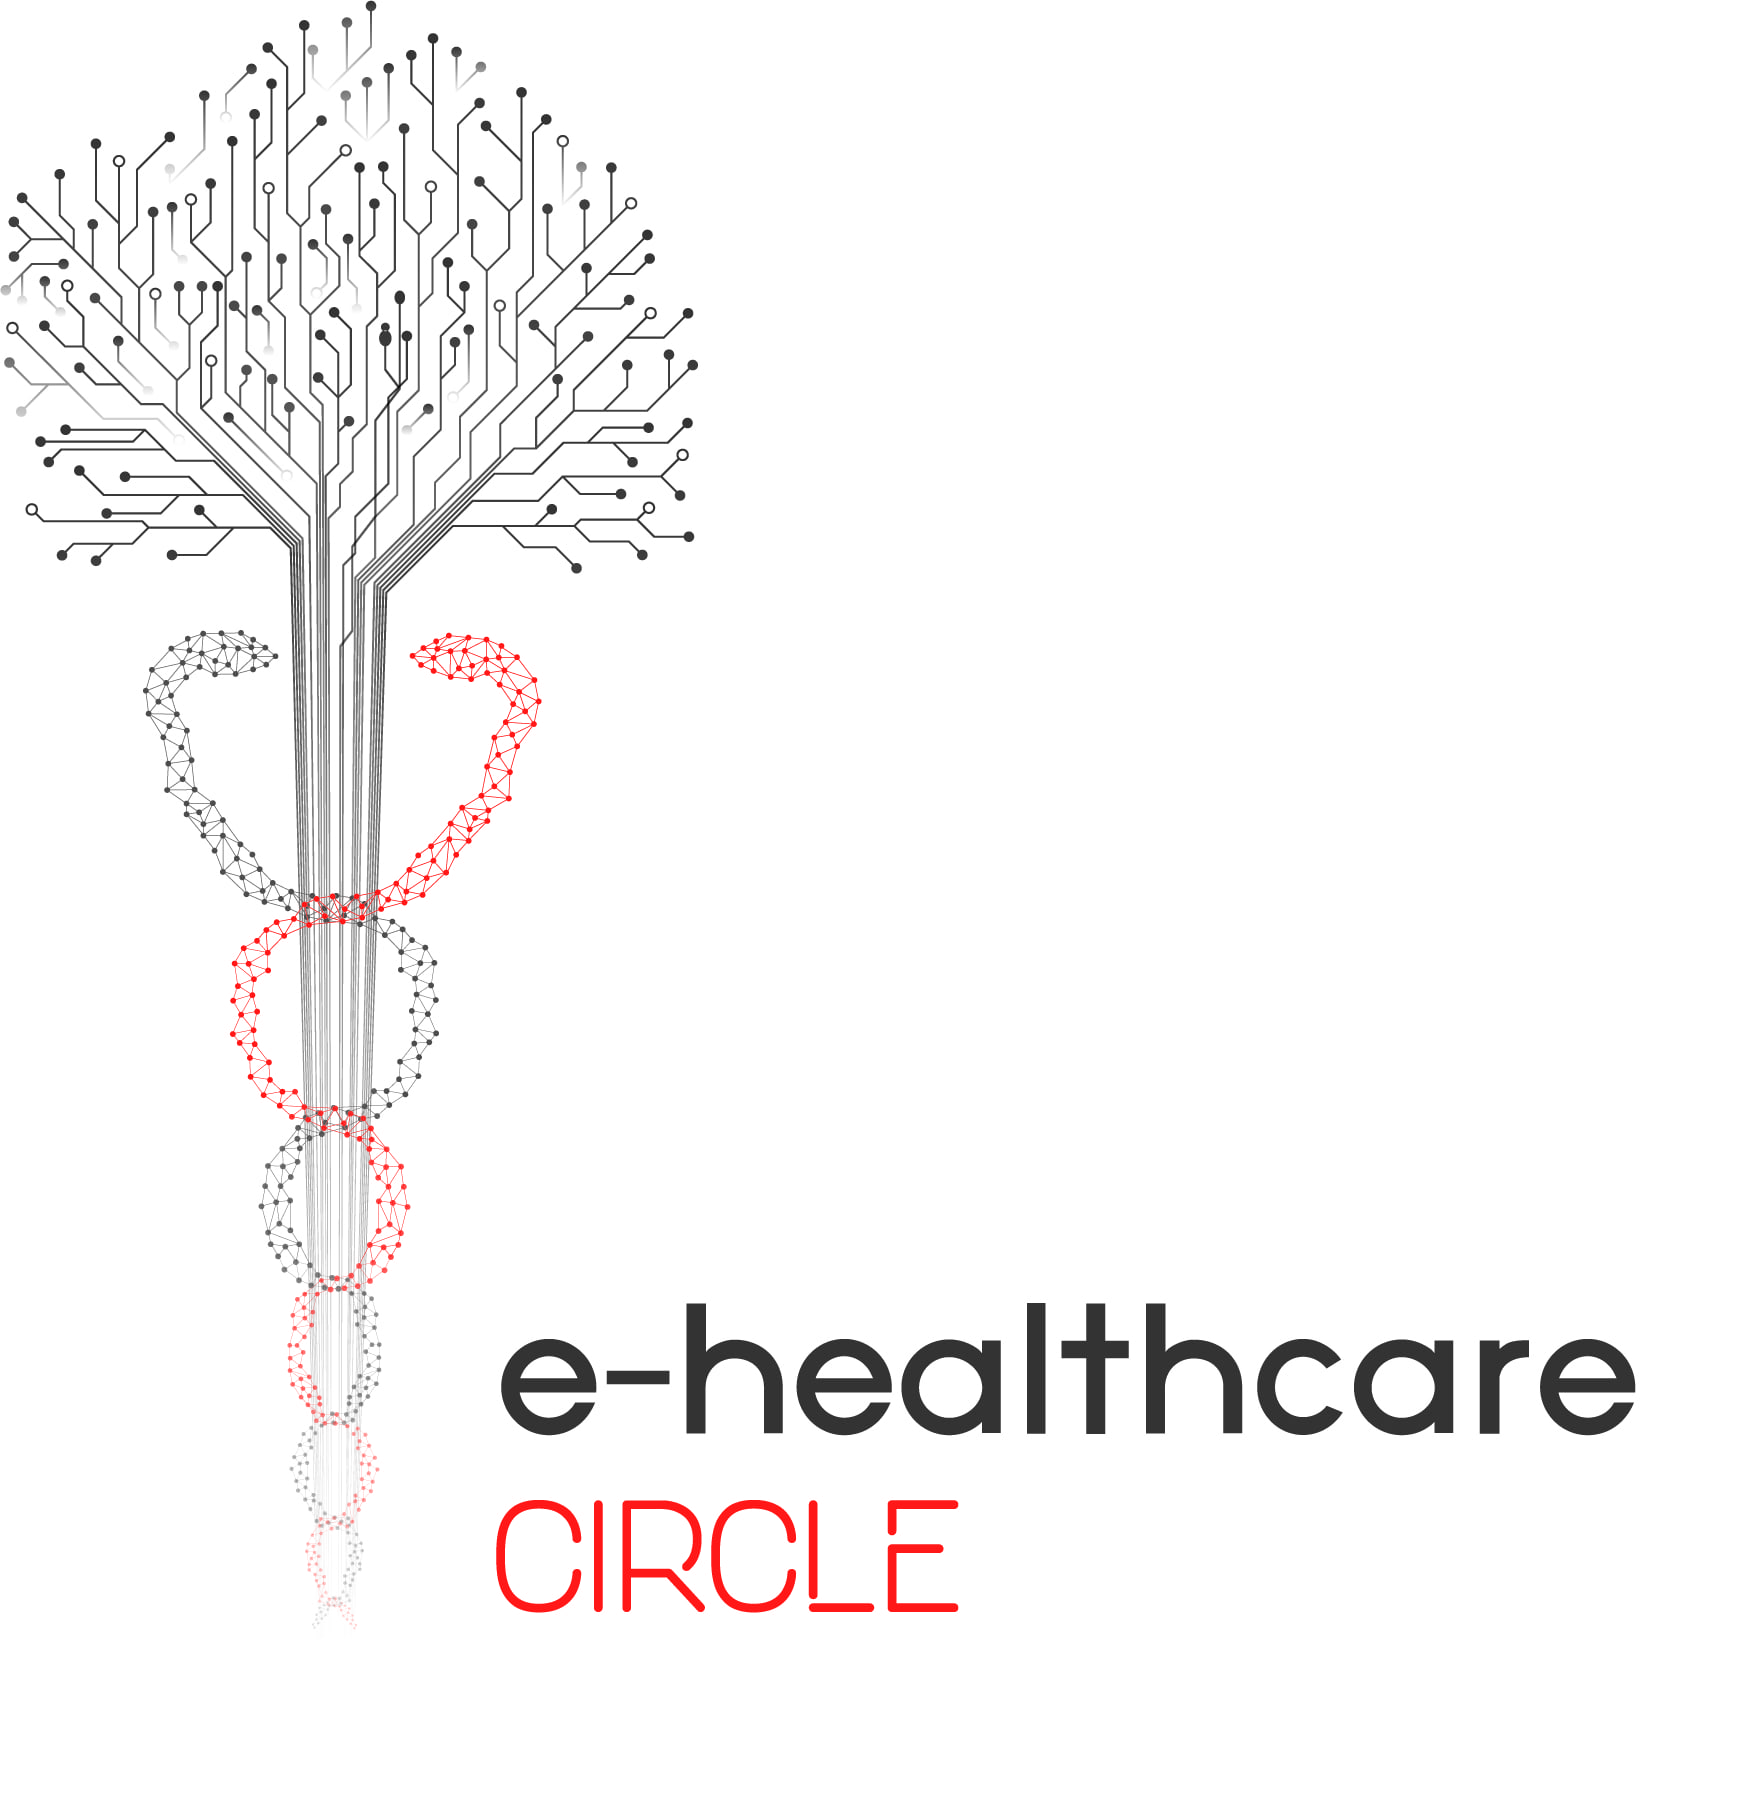 e-healthcare CIRCLE